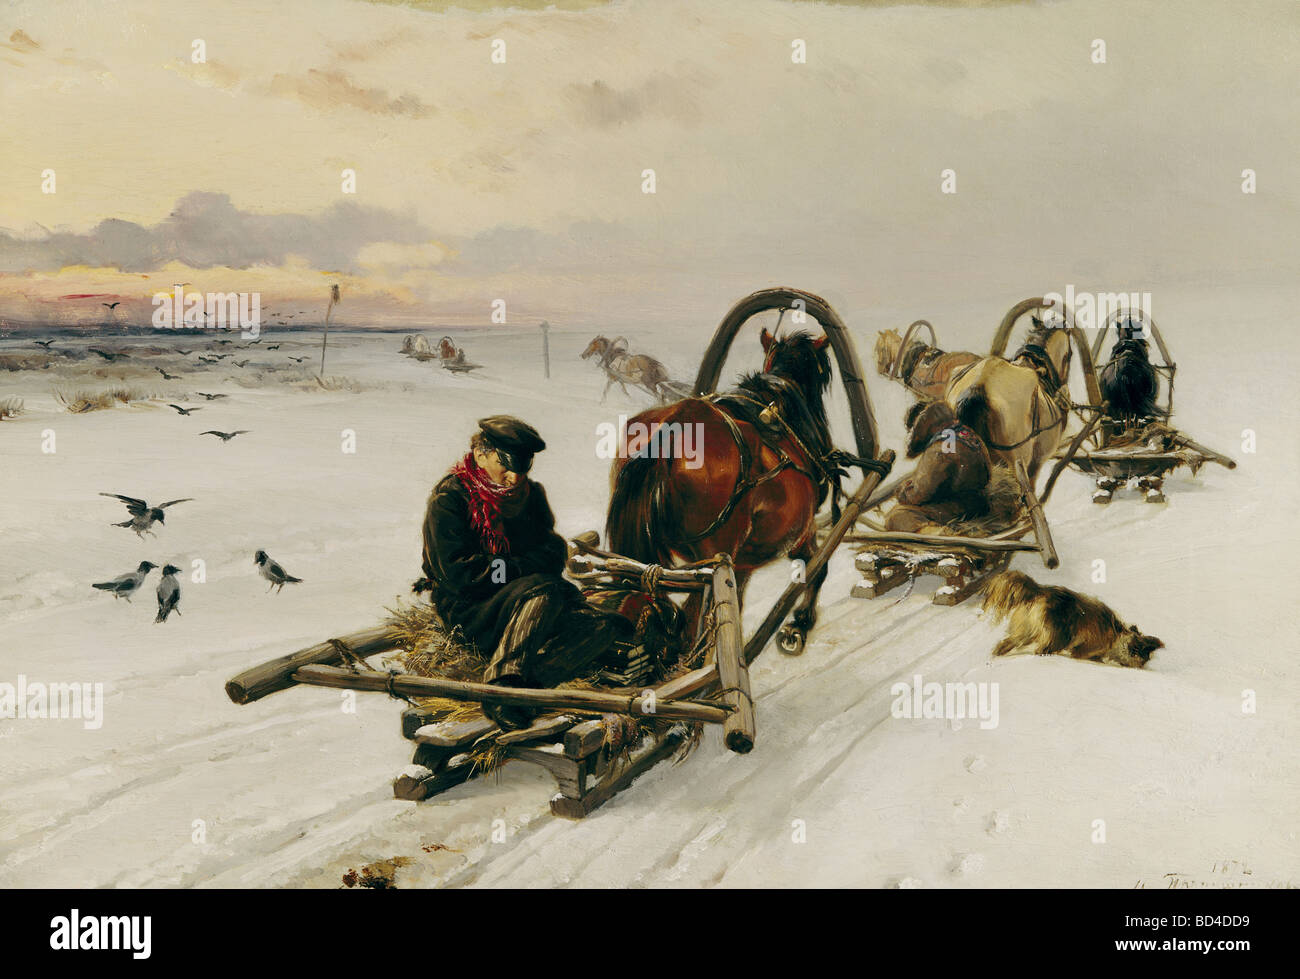 Bildende Kunst, Prjanischnikow, Illarion Mikhailovich (1840 – 1894), "leert", ca. 1872, Tretikov staatliche Galerie, Moskau, Russland Stockfoto